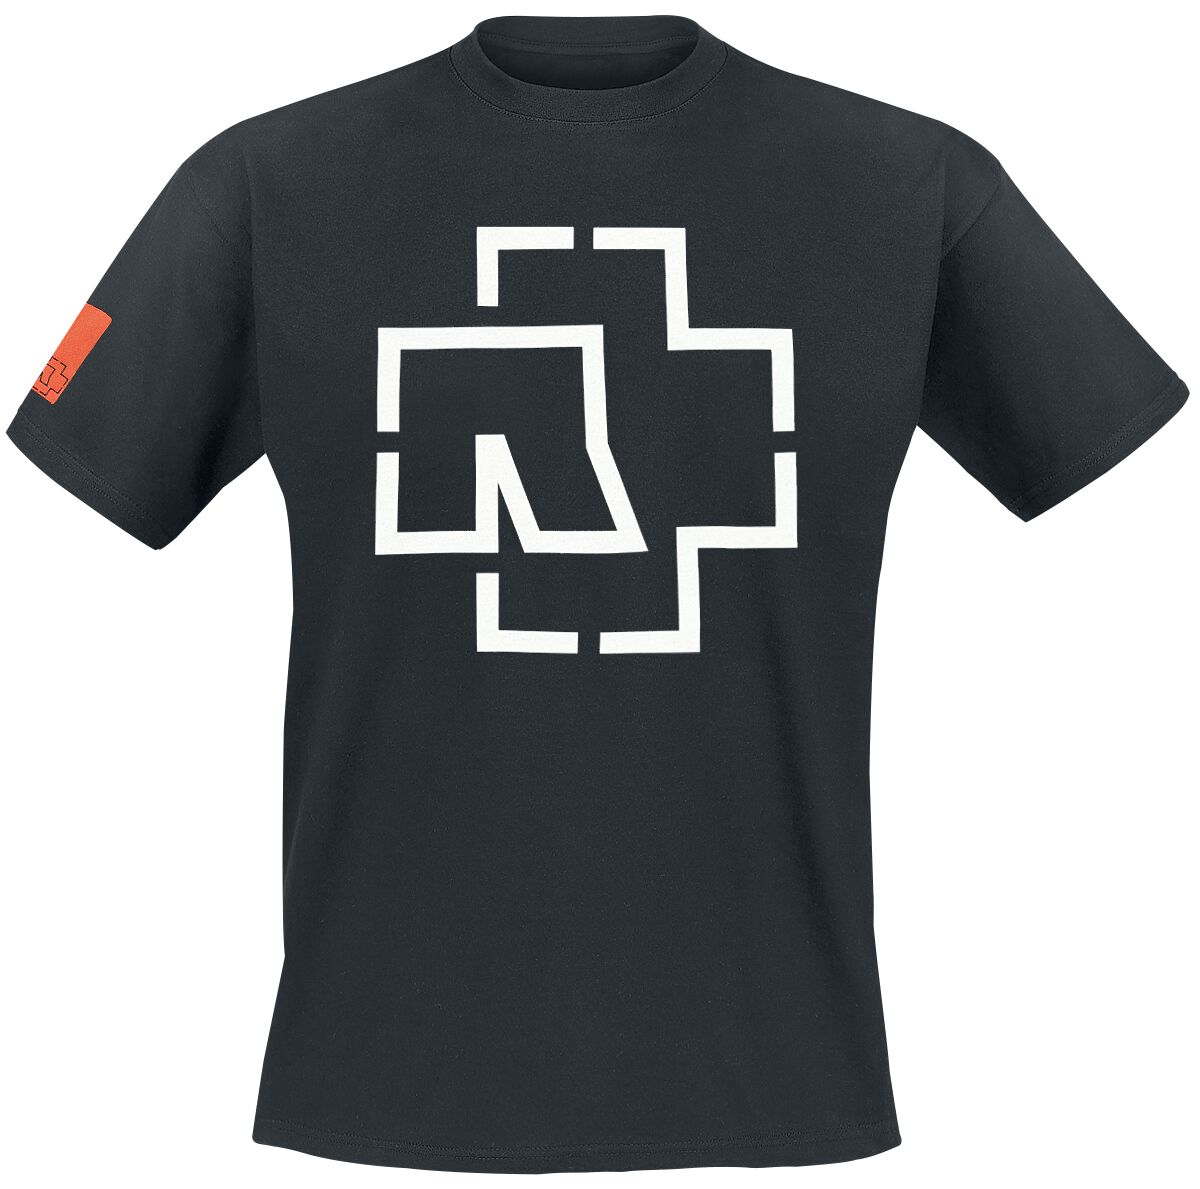 Rammstein T-Shirt - Logo - S bis 3XL - für Männer - Größe S - schwarz  - Lizenziertes Merchandise!